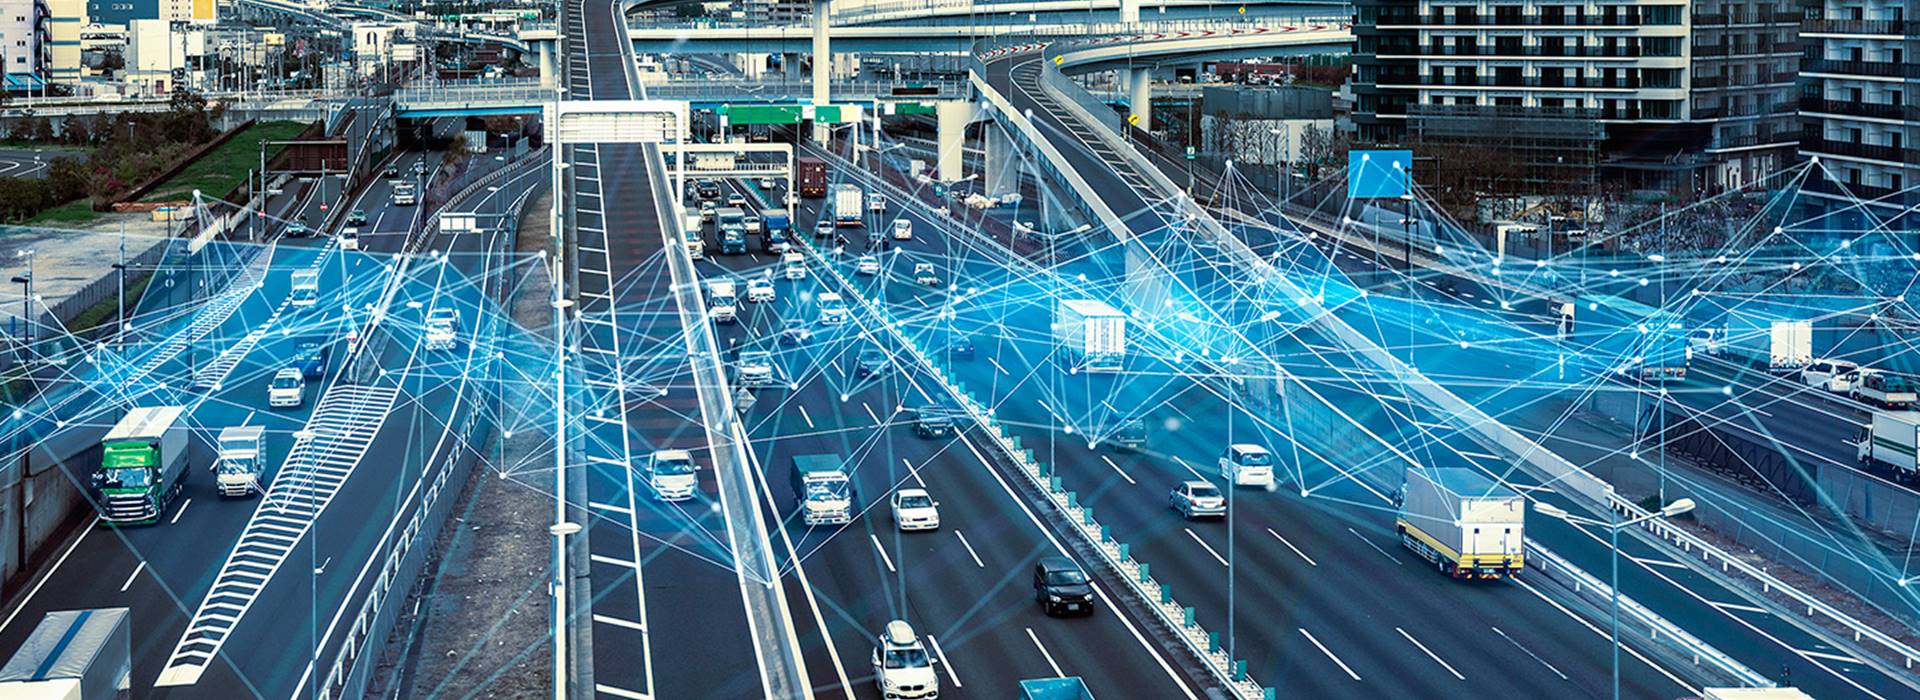 Цифровые дороги: далекое будущее или реальность